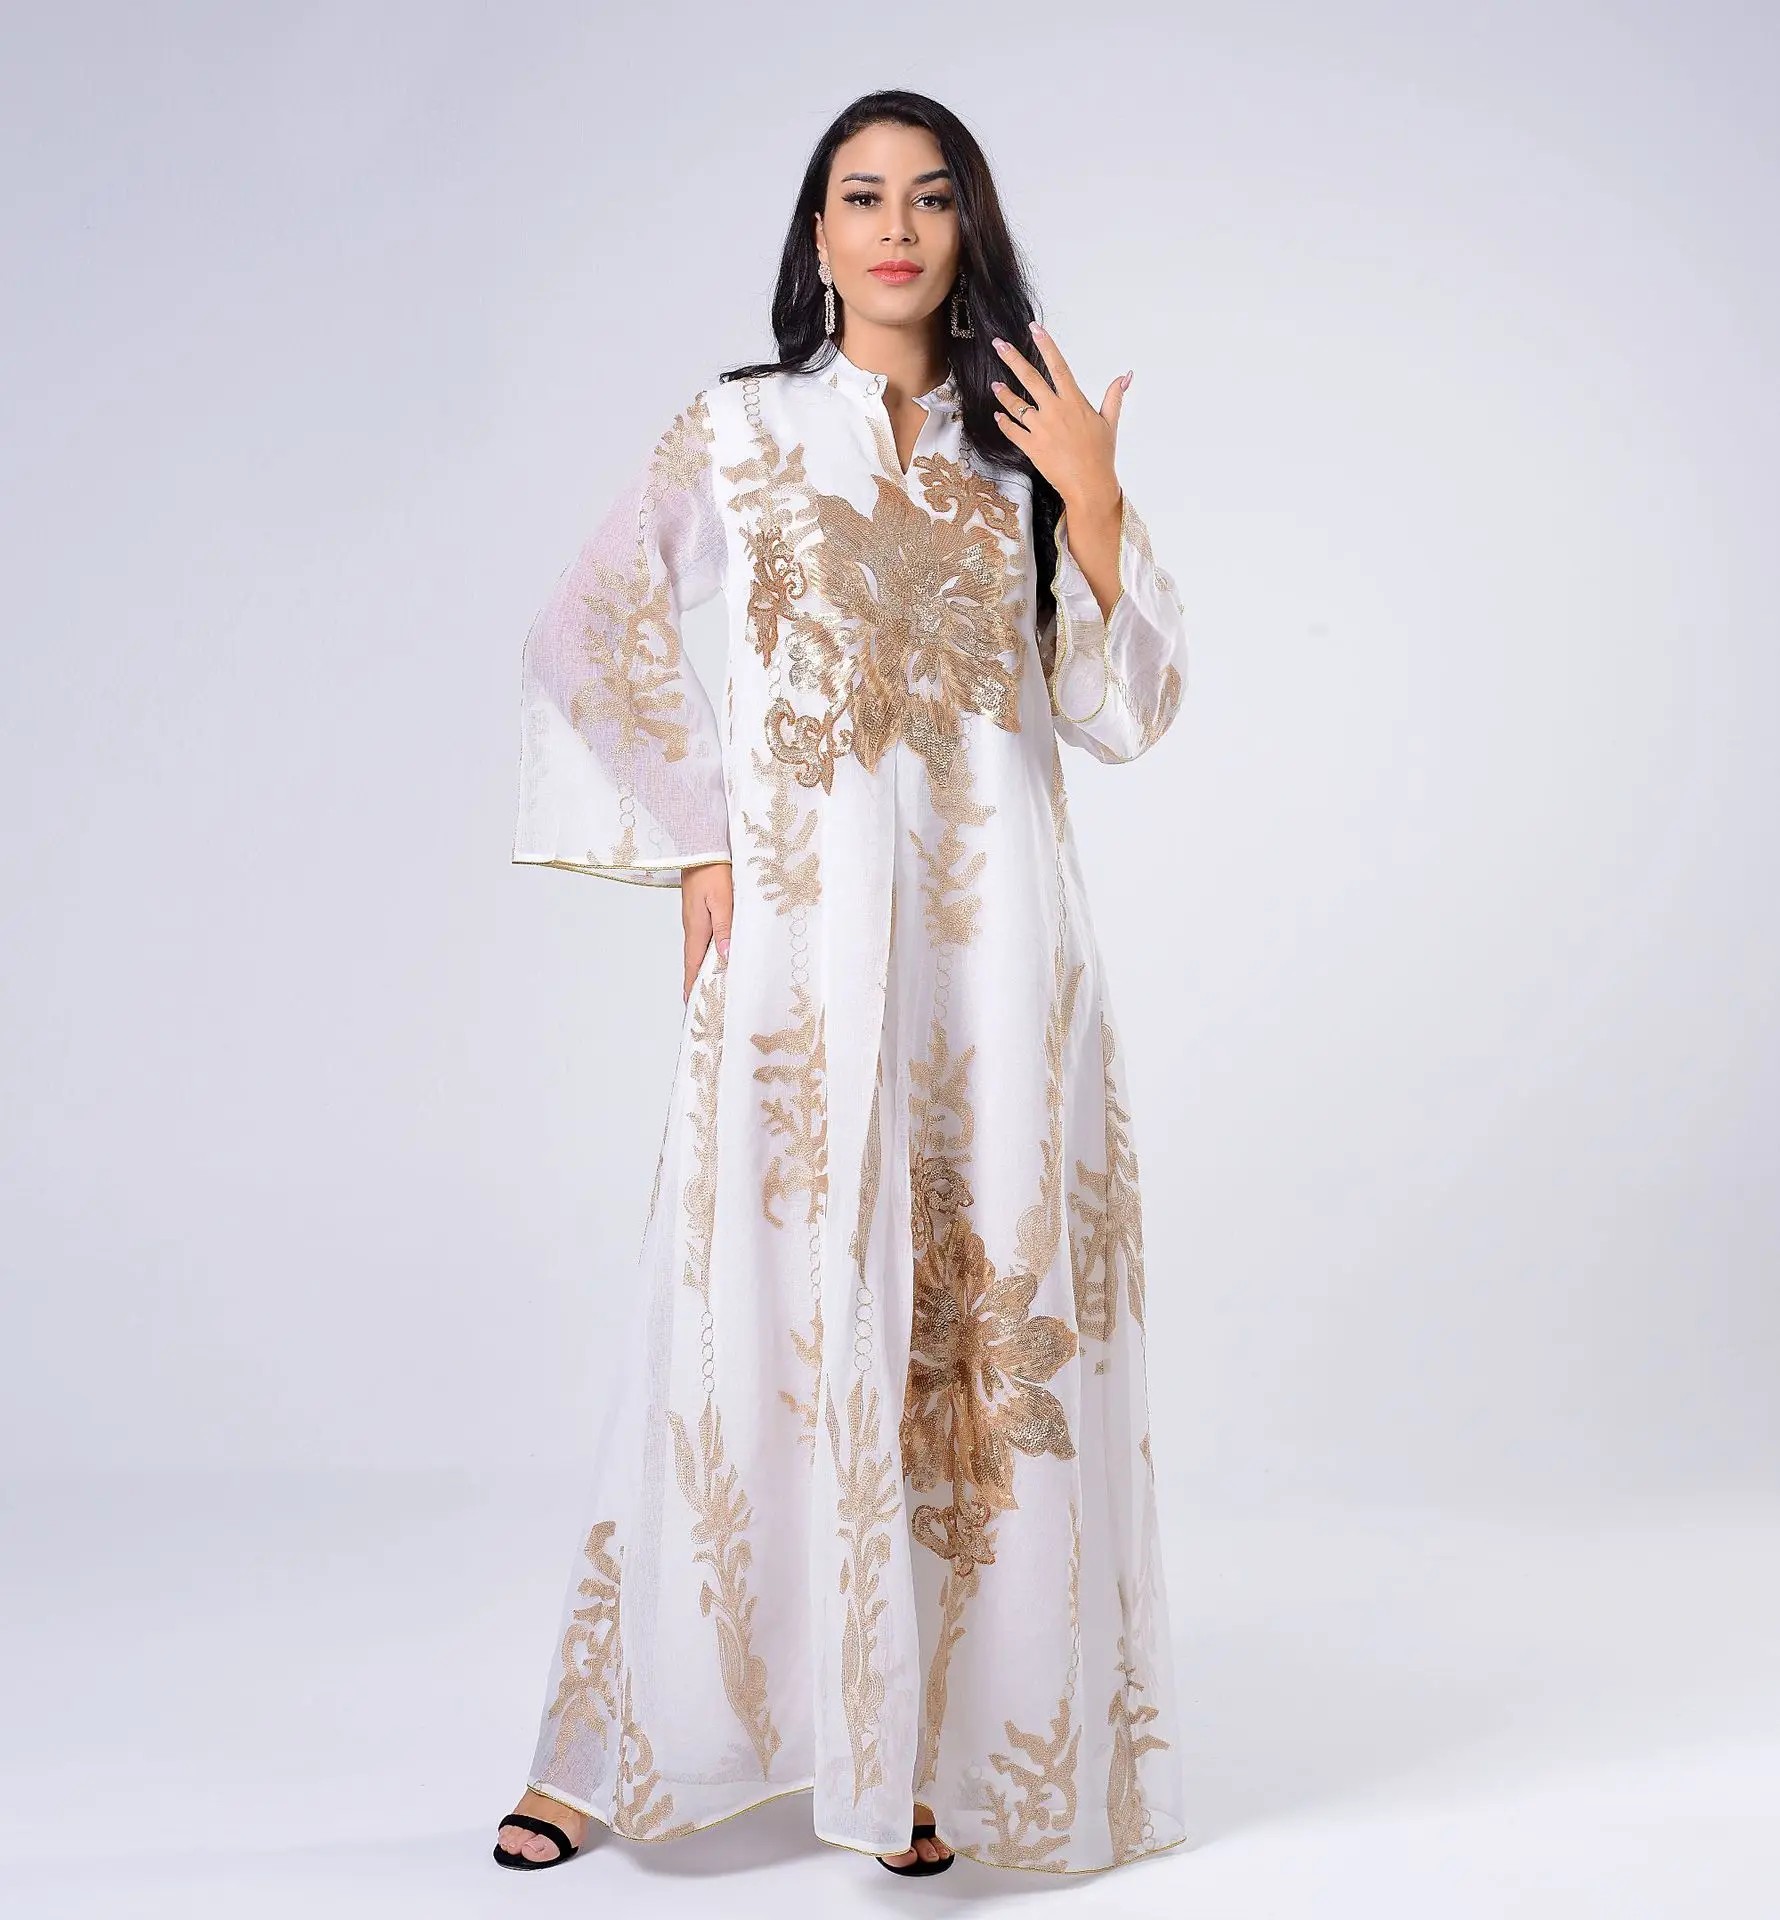 ИД мусульманское платье абайя, Дубай, арабский сатин, Индия, расклешенные рукава Рамадан мусульманский женский пакистанский марокканский к...